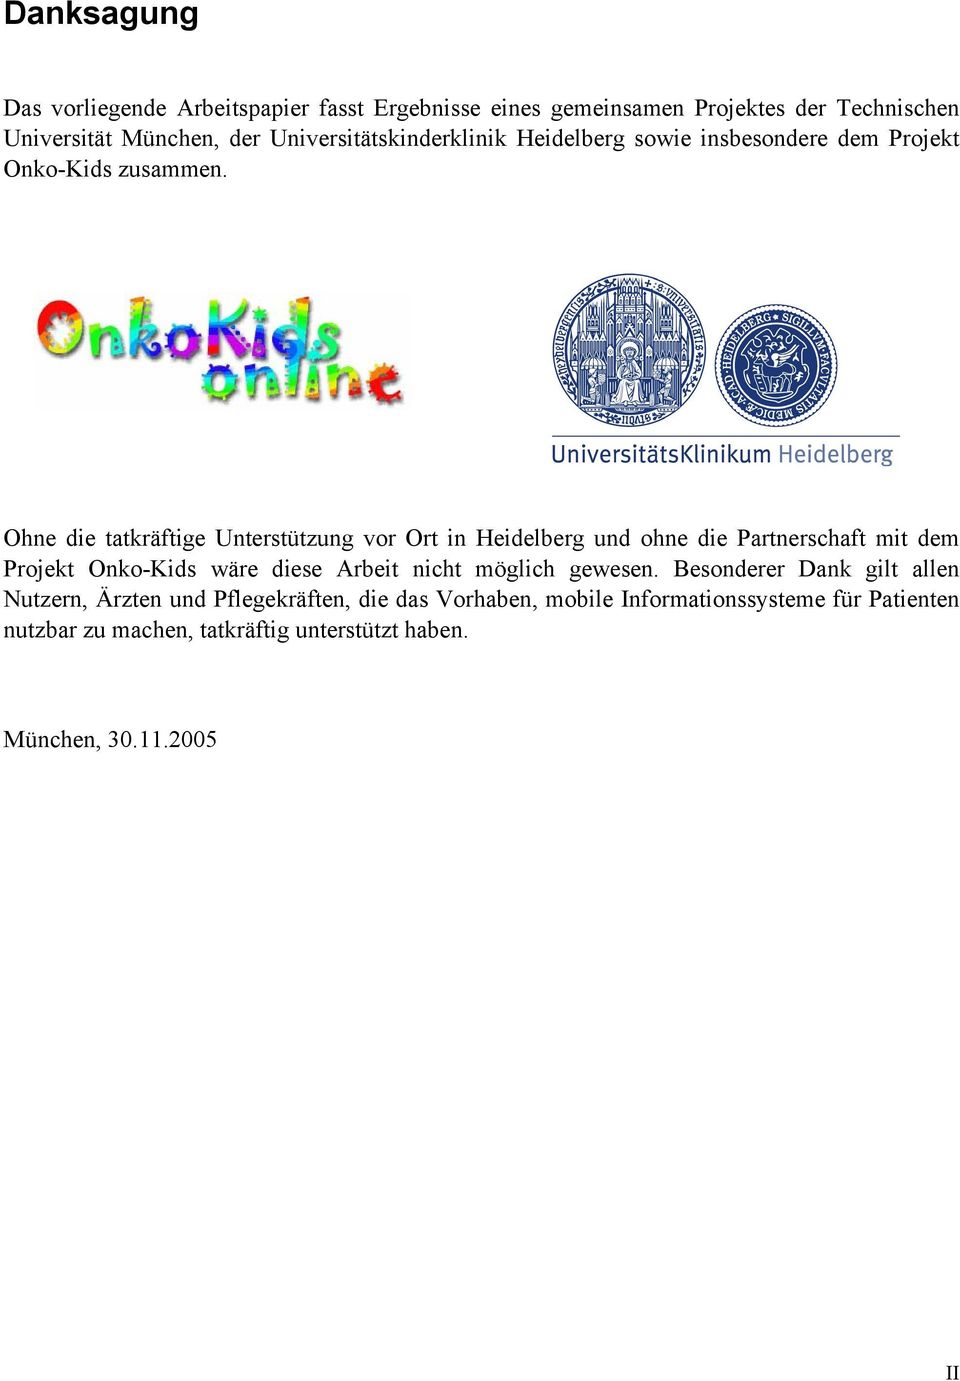 Ohne die tatkräftige Unterstützung vor Ort in Heidelberg und ohne die Partnerschaft mit dem Projekt Onko-Kids wäre diese Arbeit nicht